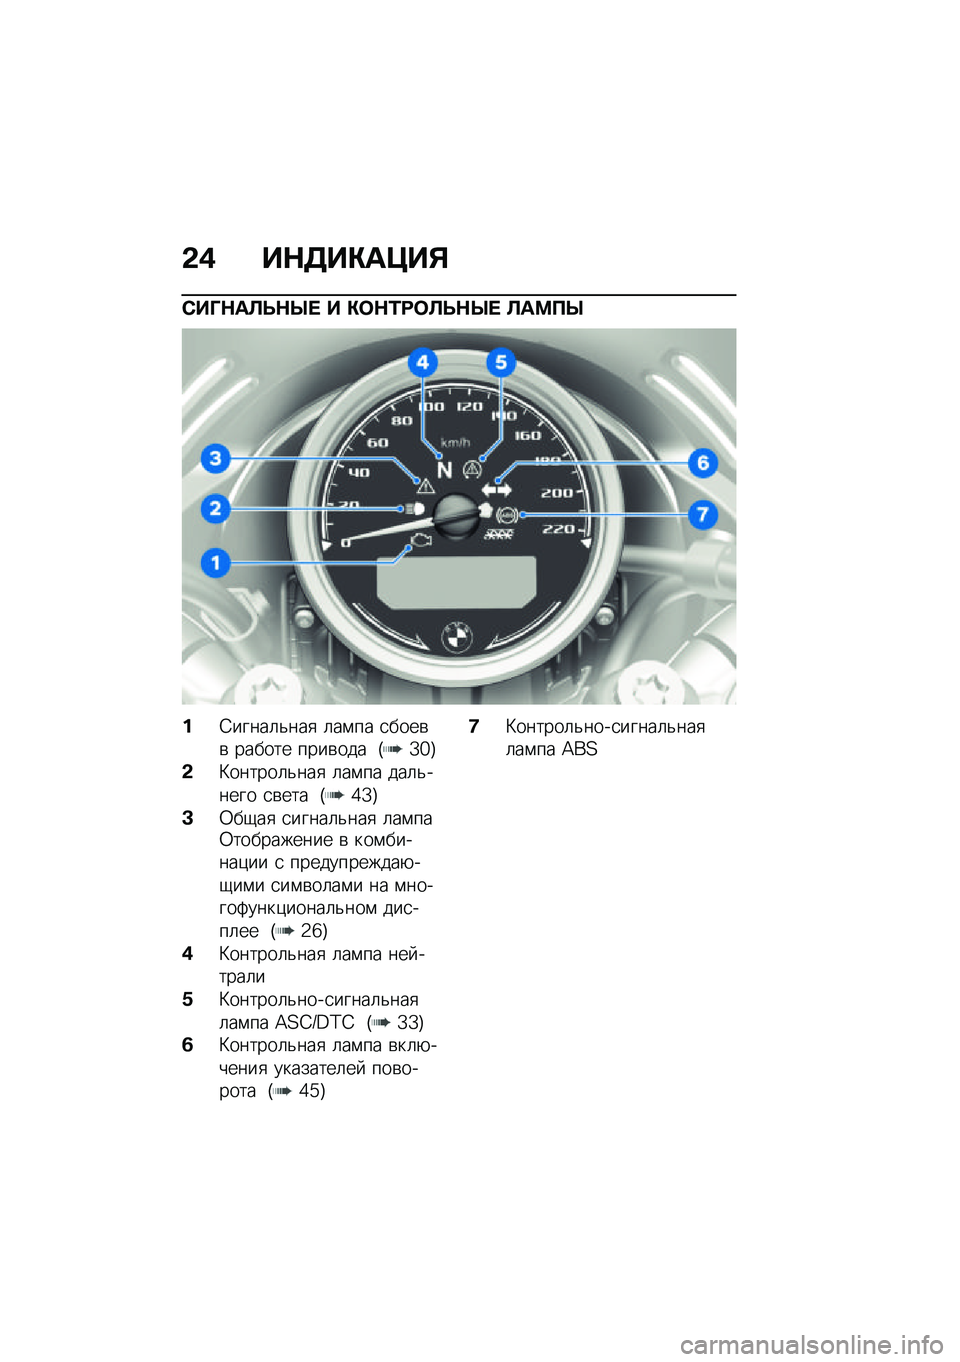 BMW MOTORRAD R NINE T URVAN G/S 2021  Руководство по эксплуатации (in Russian) �&�( ��$�3��"��=��%
�)��O�$��B�F�$�Q�  � �"�	�$�/�:�	�B�F�$�Q�  �B��<�?�Q
��4�����	�&���
 �	��\f�� �
����\b�\b ������ ����\b��� �G�Z�_�H
�&�L������	�&���
 �	��